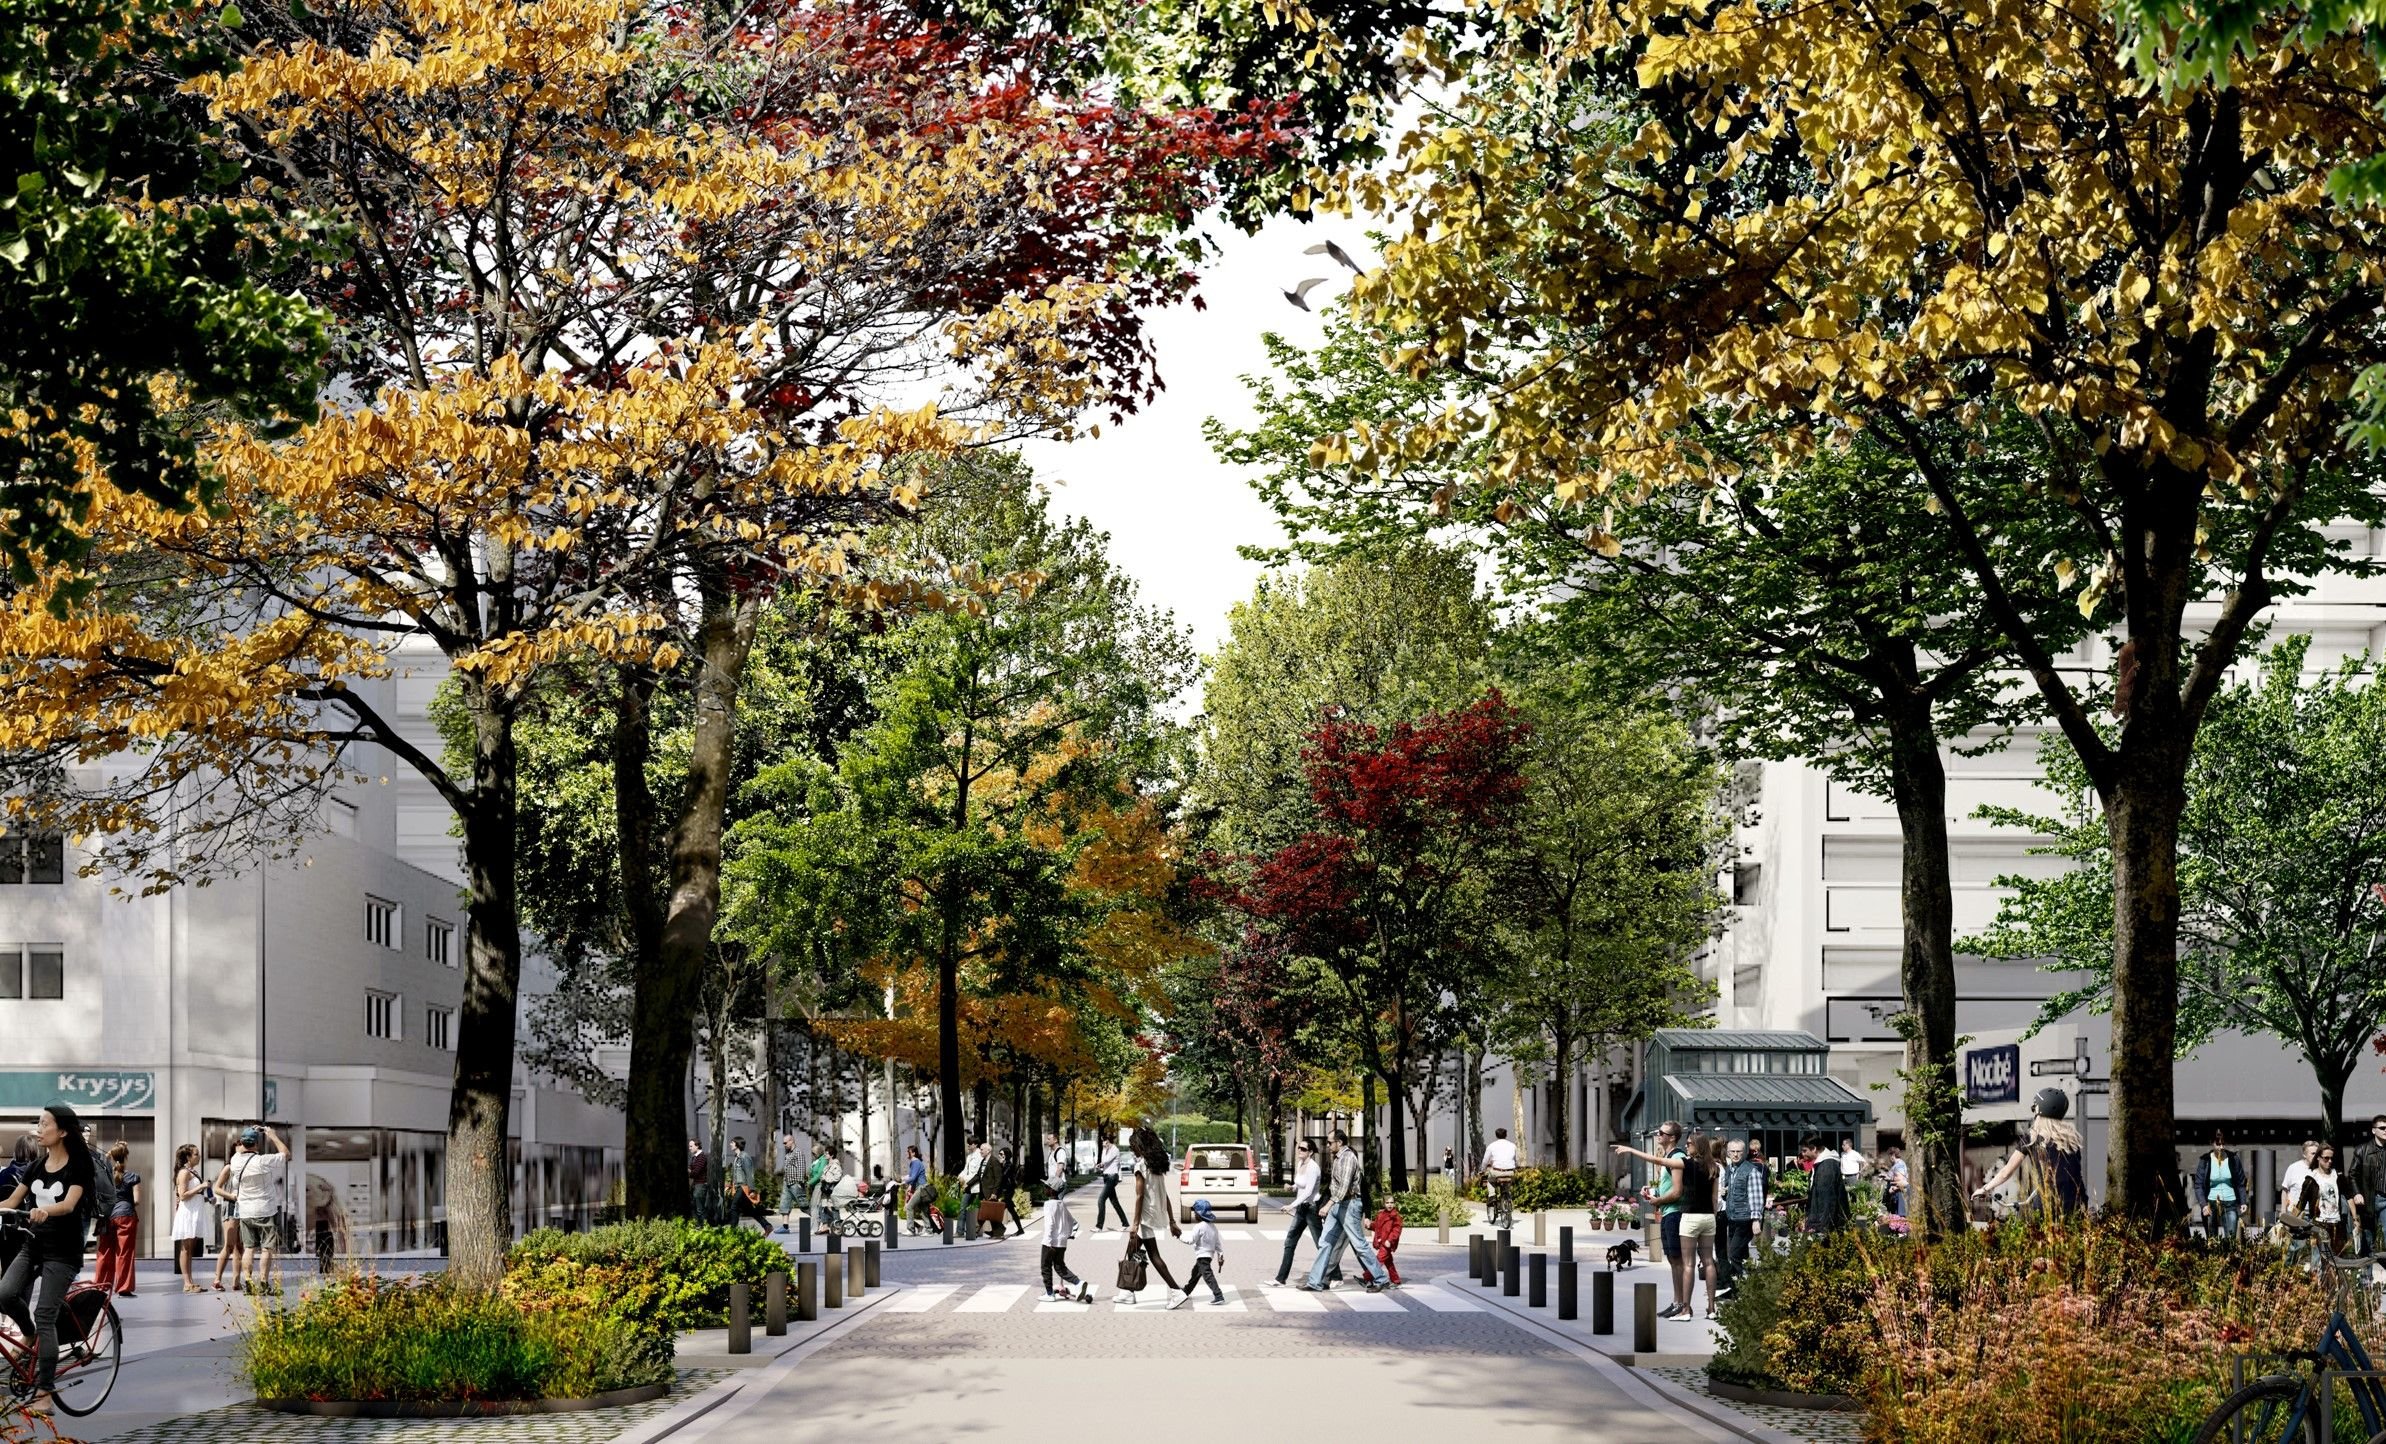 Le projet de requalification de l'avenue Gabriel-Péri à Argenteuil (ici un visuel) prévoit d'ajouter une rangée d'arbres de chaque côté de la chaussée, en plus de celles qui existe déjà. Agence Michel Desvigne